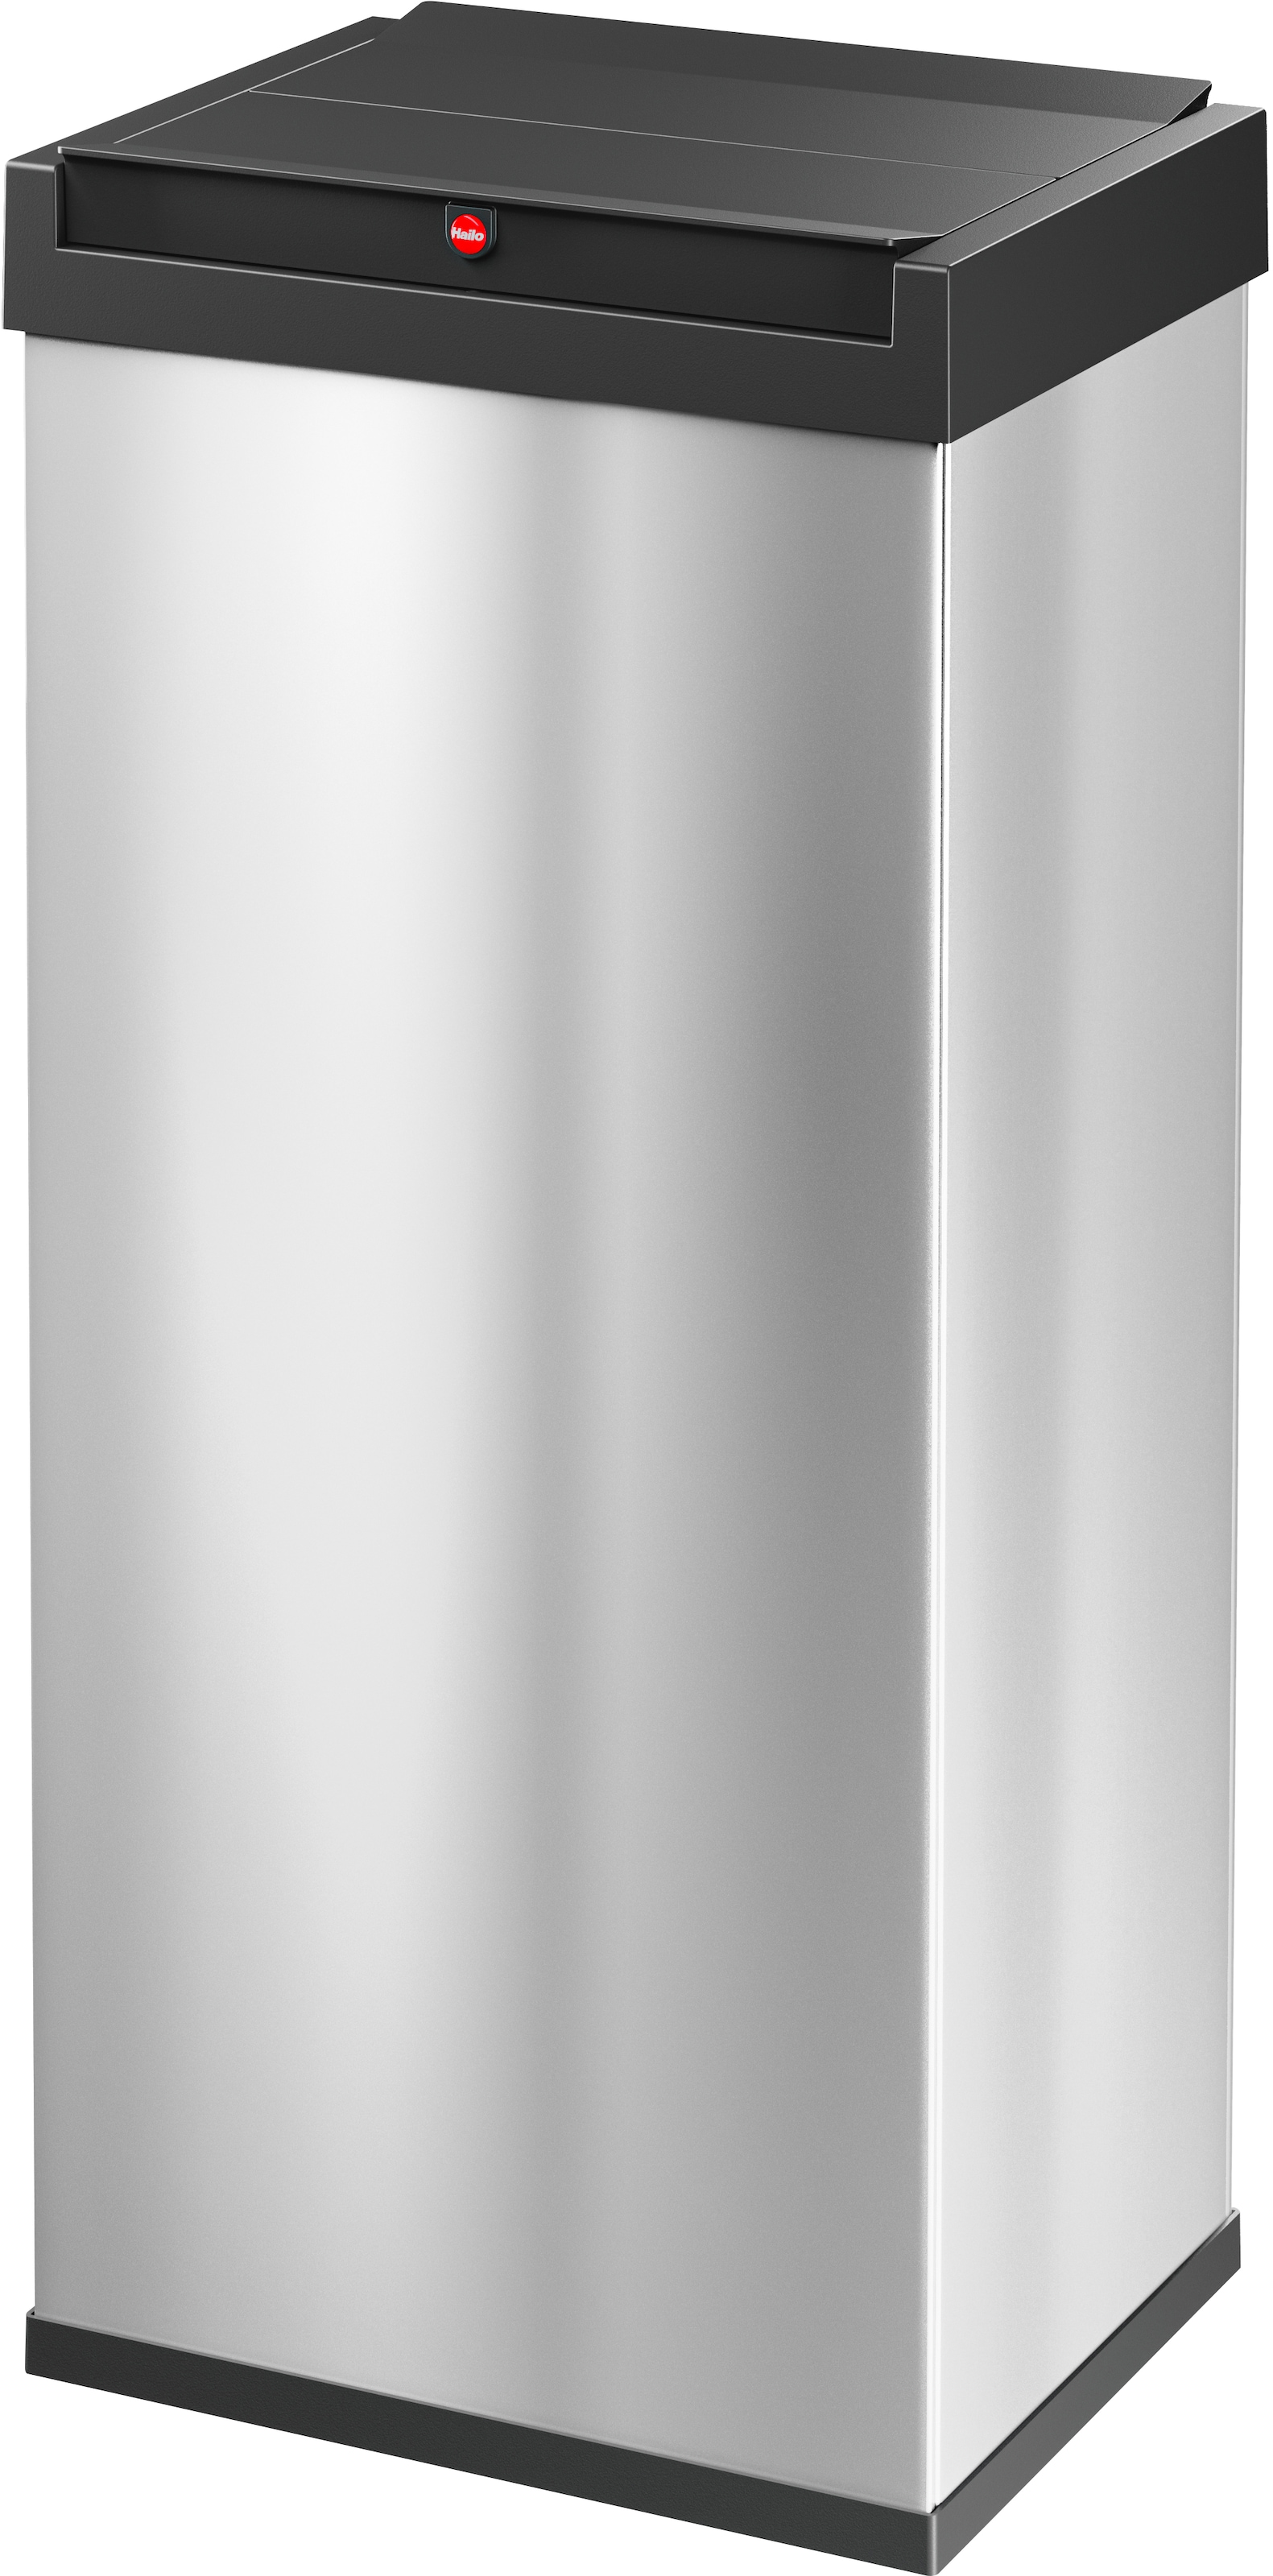 Hailo Mülleimer "Big-Box Swing XL", 1 Behälter, 52 l, Stahlblech o. Edelstahl, mit selbstschließendem Schwingdeckel